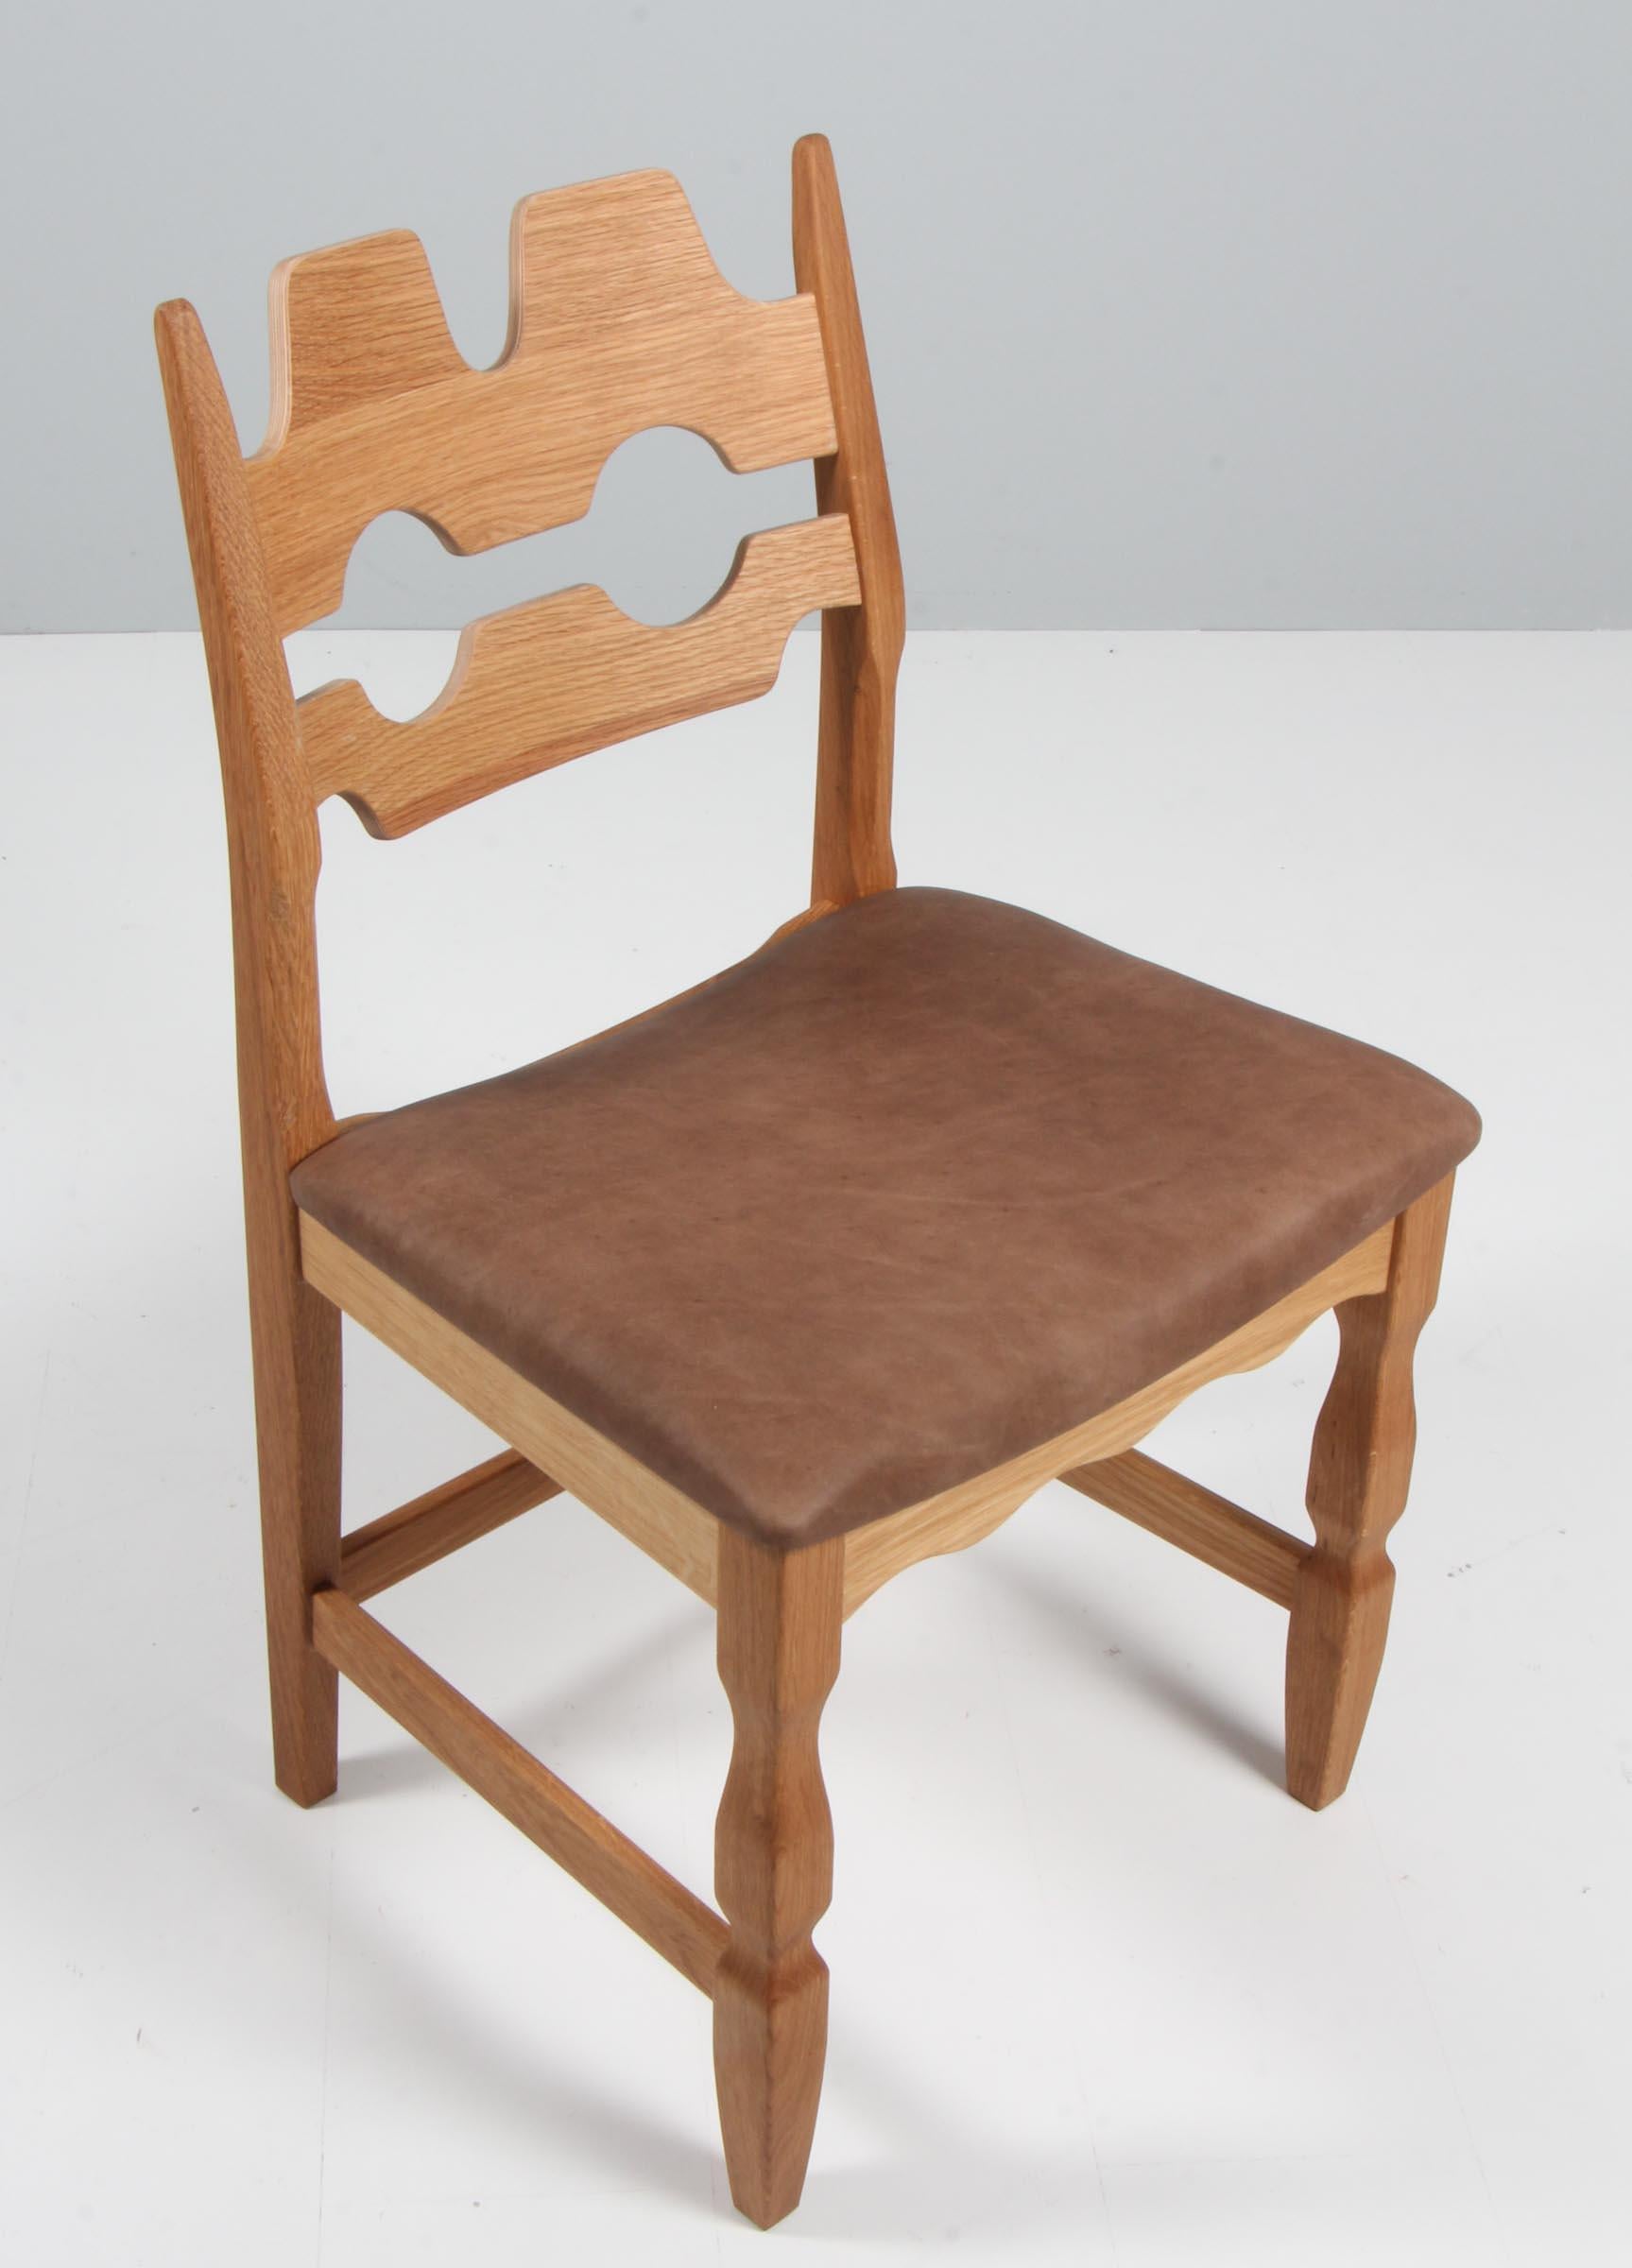 Conjunto de llamativas sillas de comedor de Henning Kjærnulf, de roble y piel anilina tabaco vintage.

Un diseño refrescante, con un atrevido barroco que combina a la perfección con el modernismo de mediados de siglo.

Model No: Navaja

Realizado